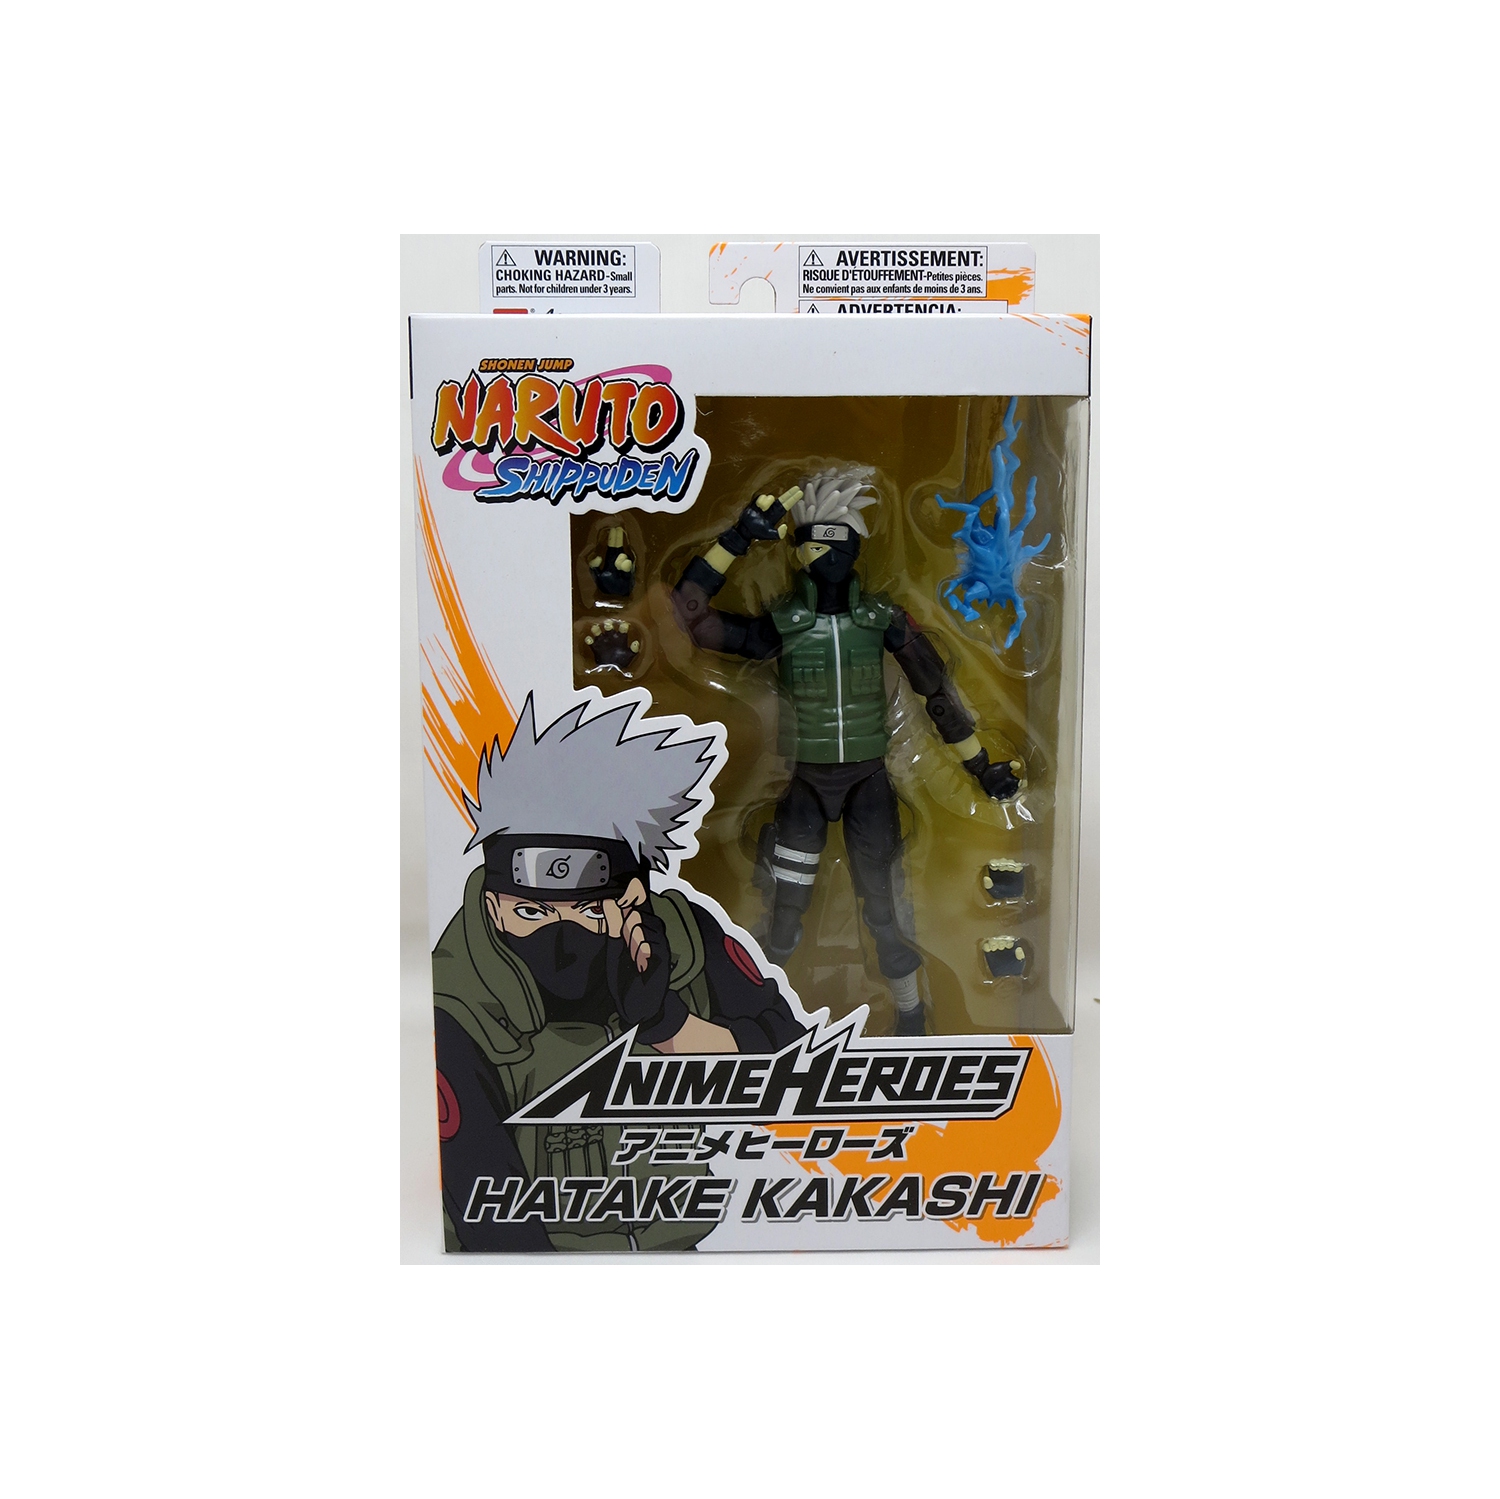 Naruto Shippuden 6 Inch Action Figure Anime Heroes - Kakashi